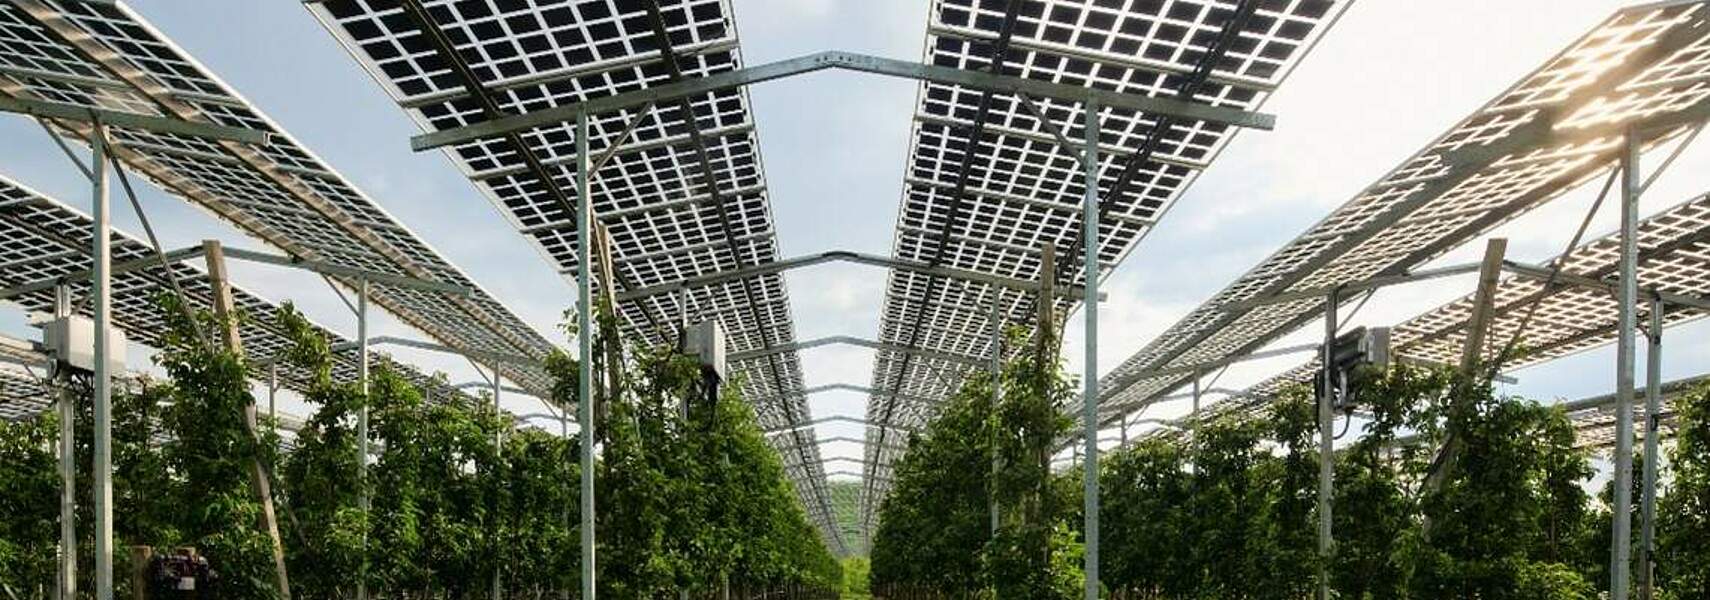 Agri-Photovoltaik: bessere Chancen für kleinere Anlagen